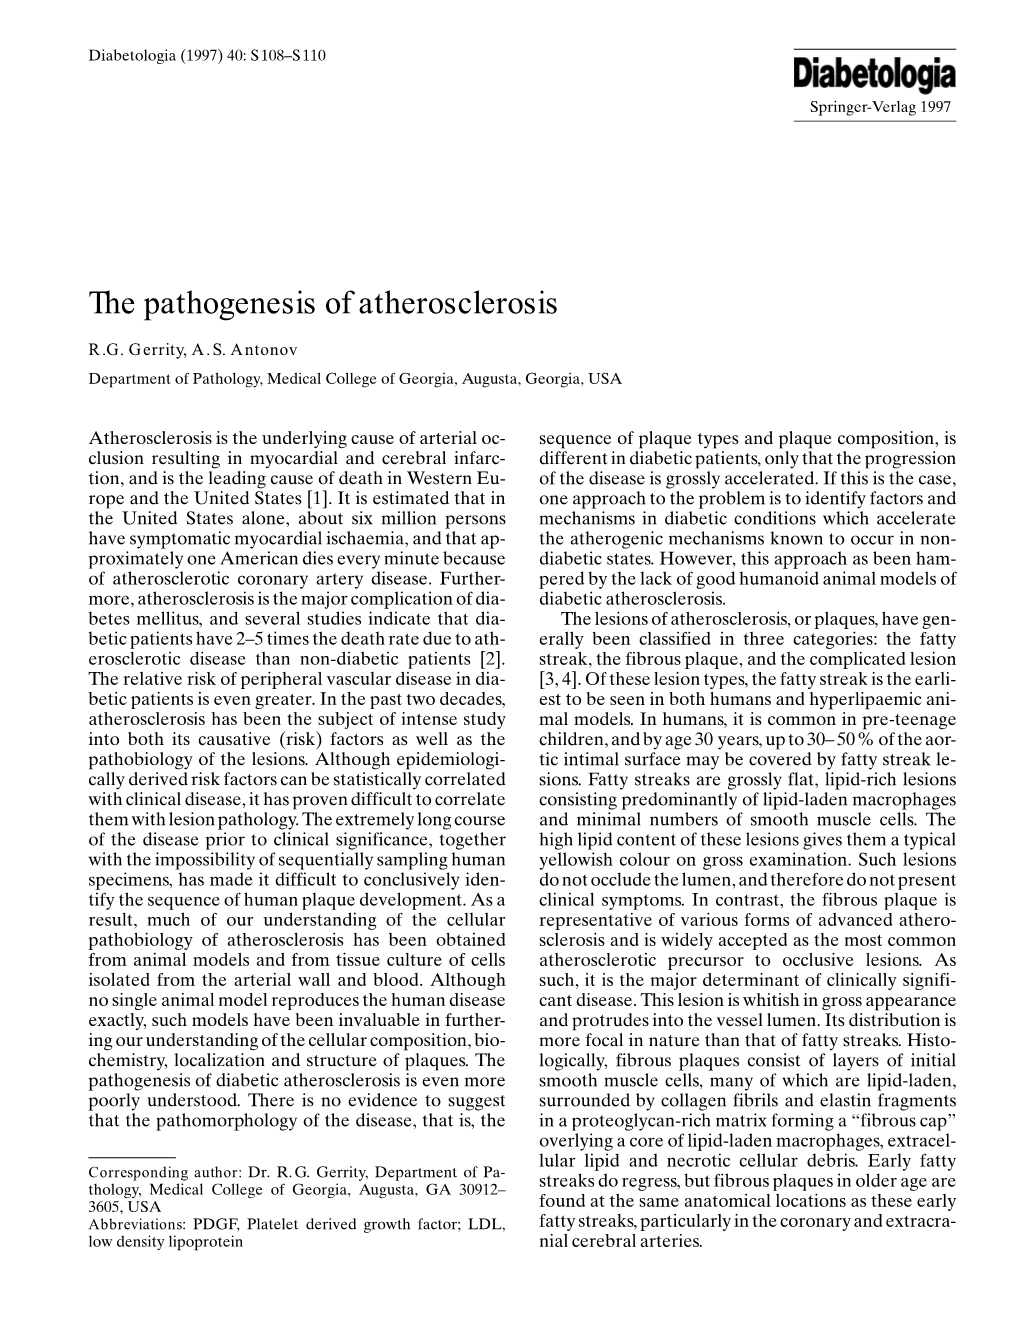 The Pathogenesis of Atherosclerosis